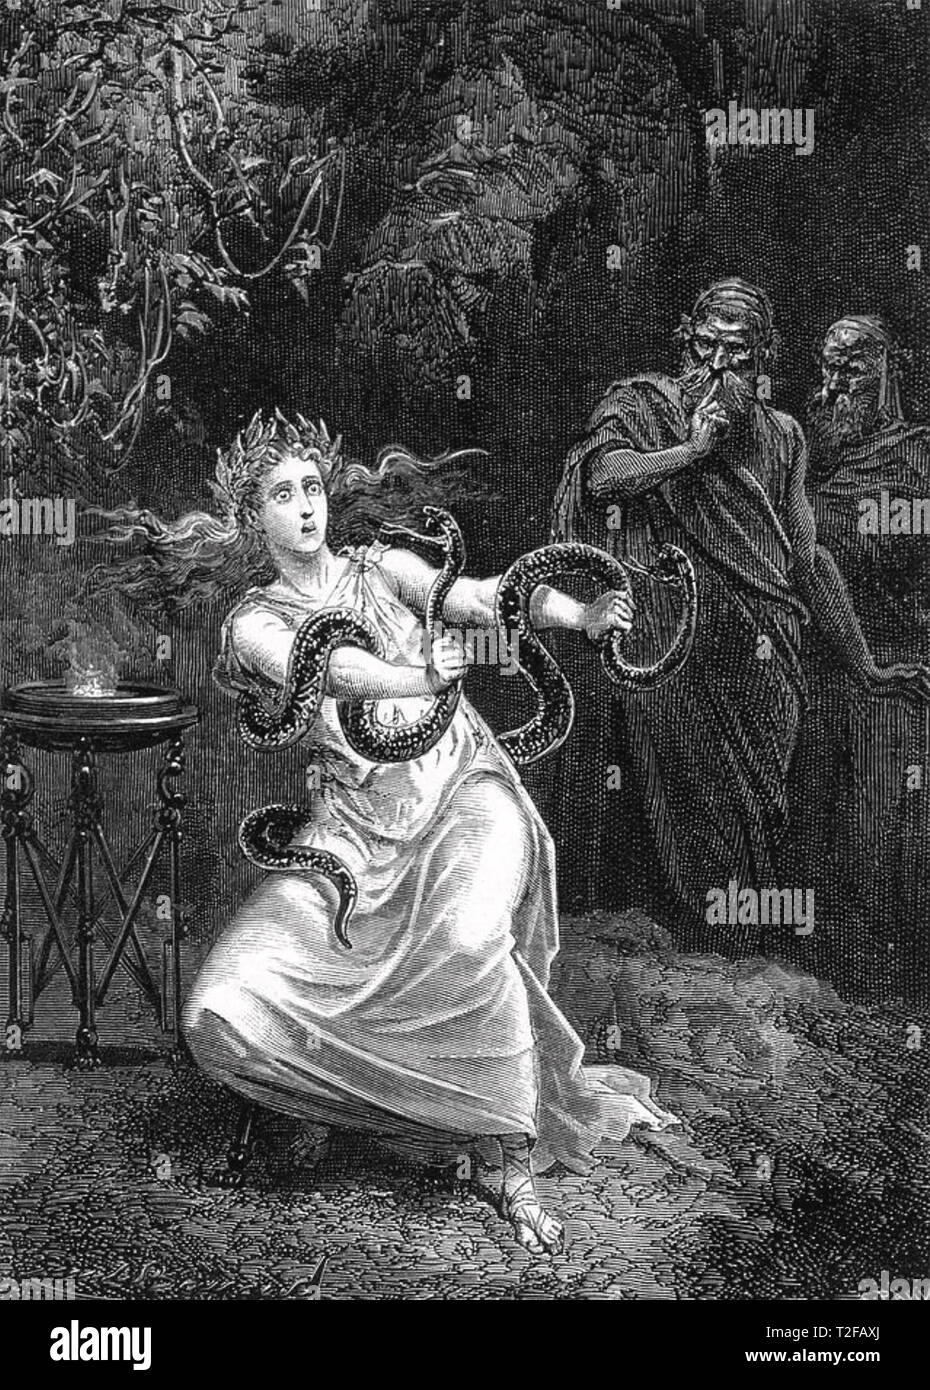 ORACLE DE DELPHES La Pythie (Grande Prêtresse) se débat avec les serpents dans une gravure du début du 19e siècle Banque D'Images